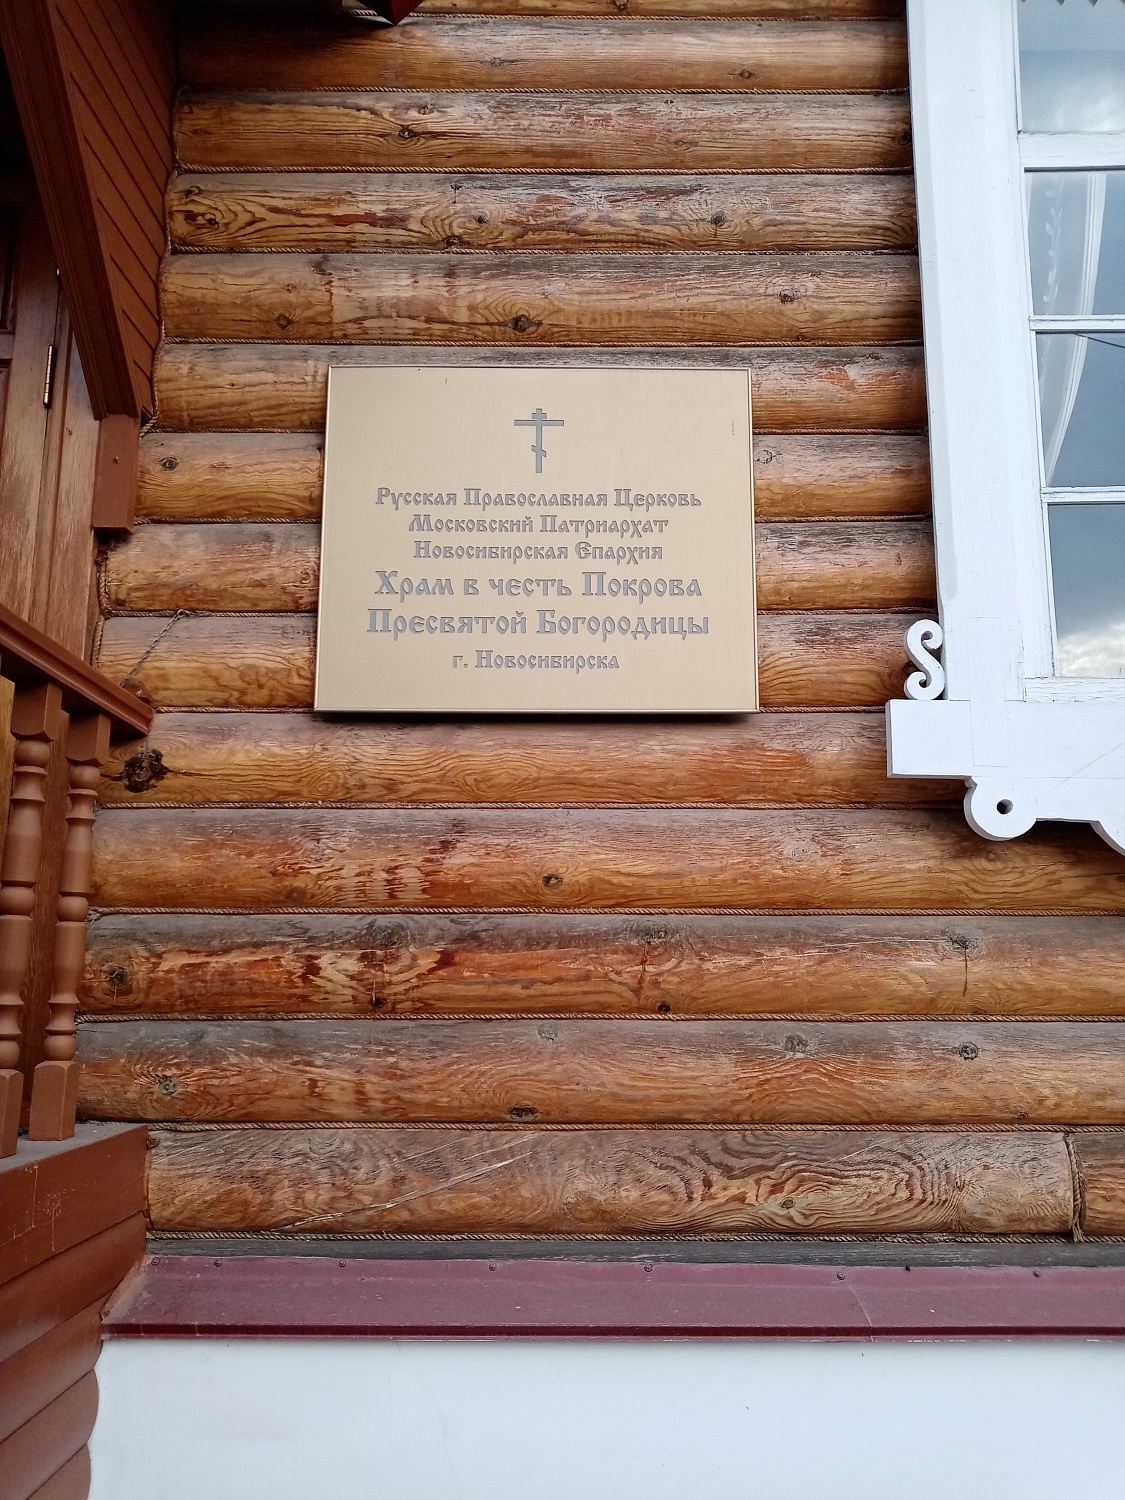 В этом храме был совершен обряд крещения младенца Александра Покрышкина